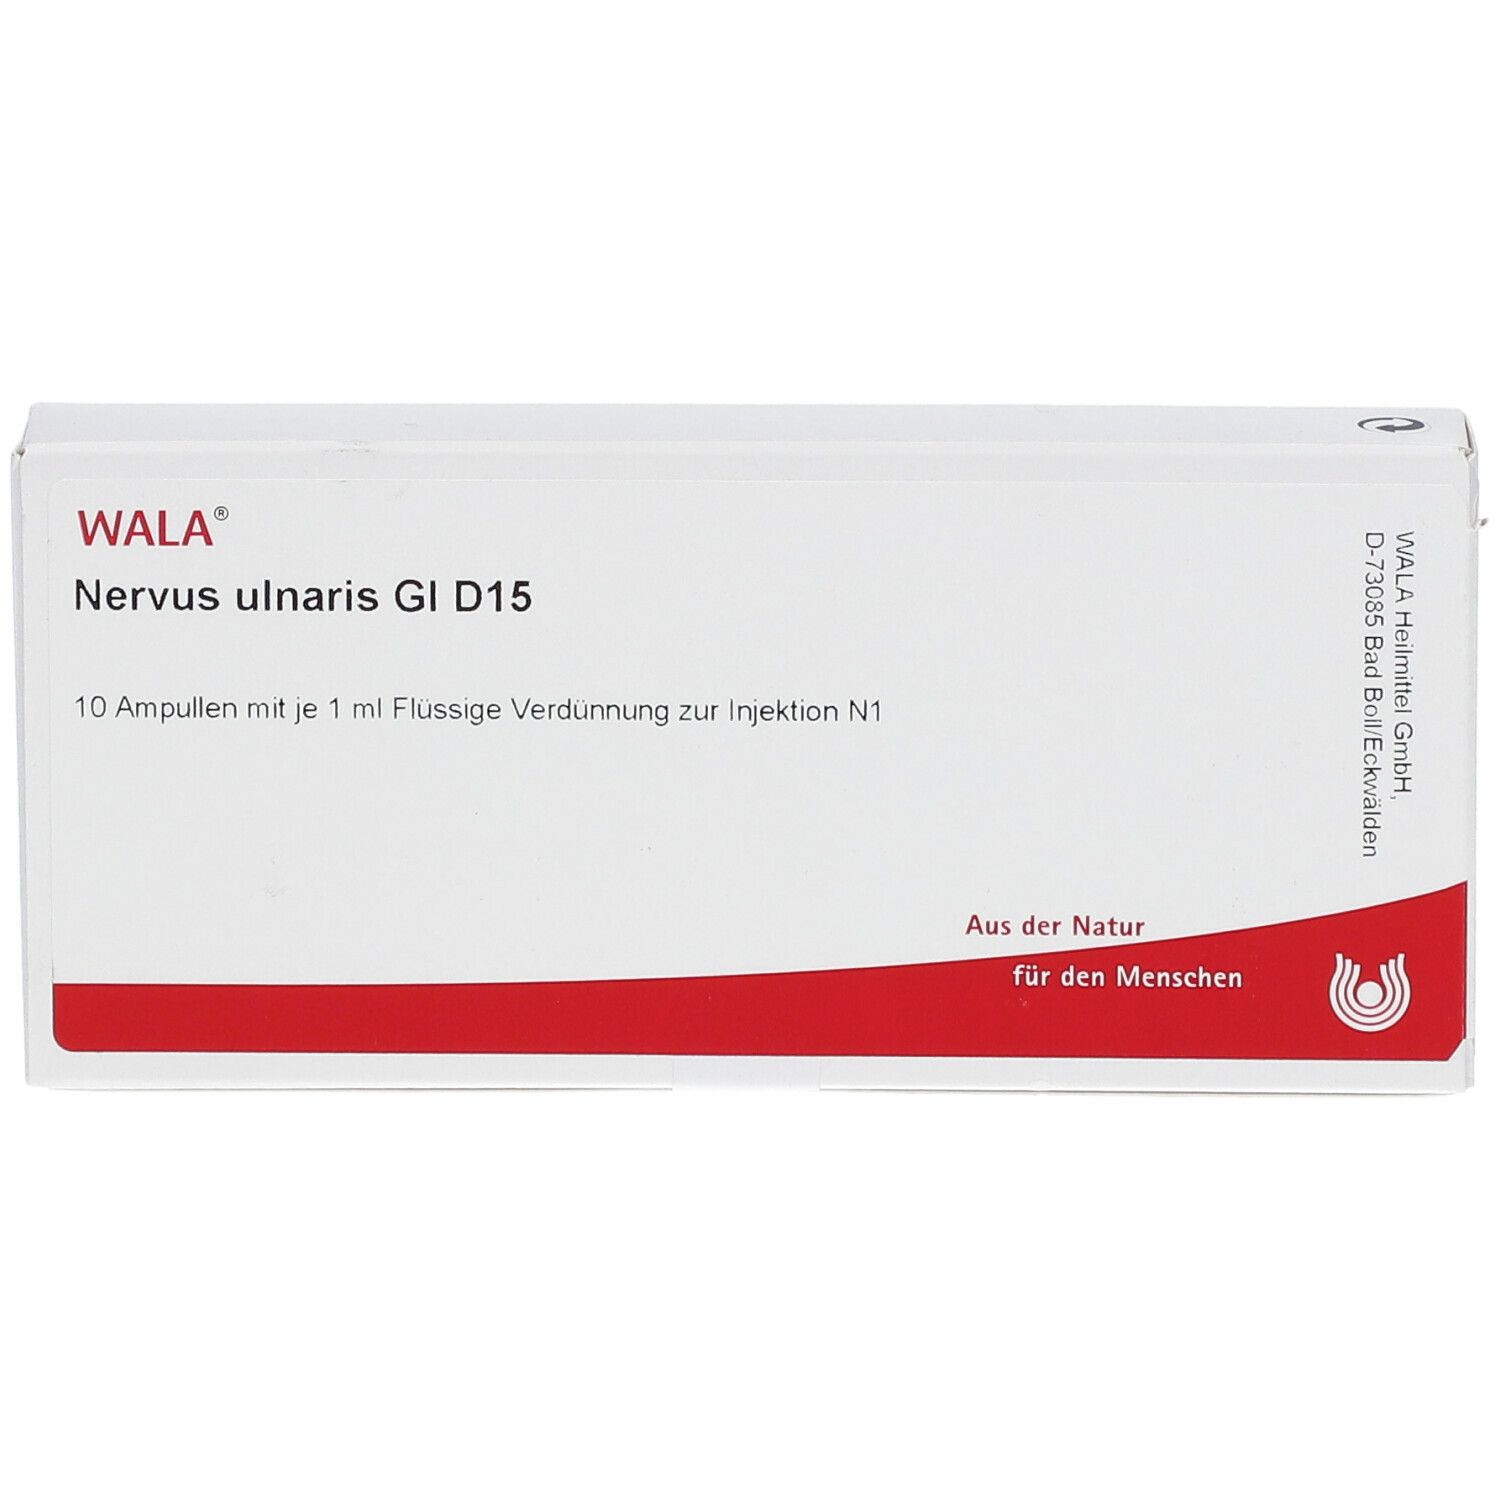 WALA® Nervus ulnaris Gl D 15